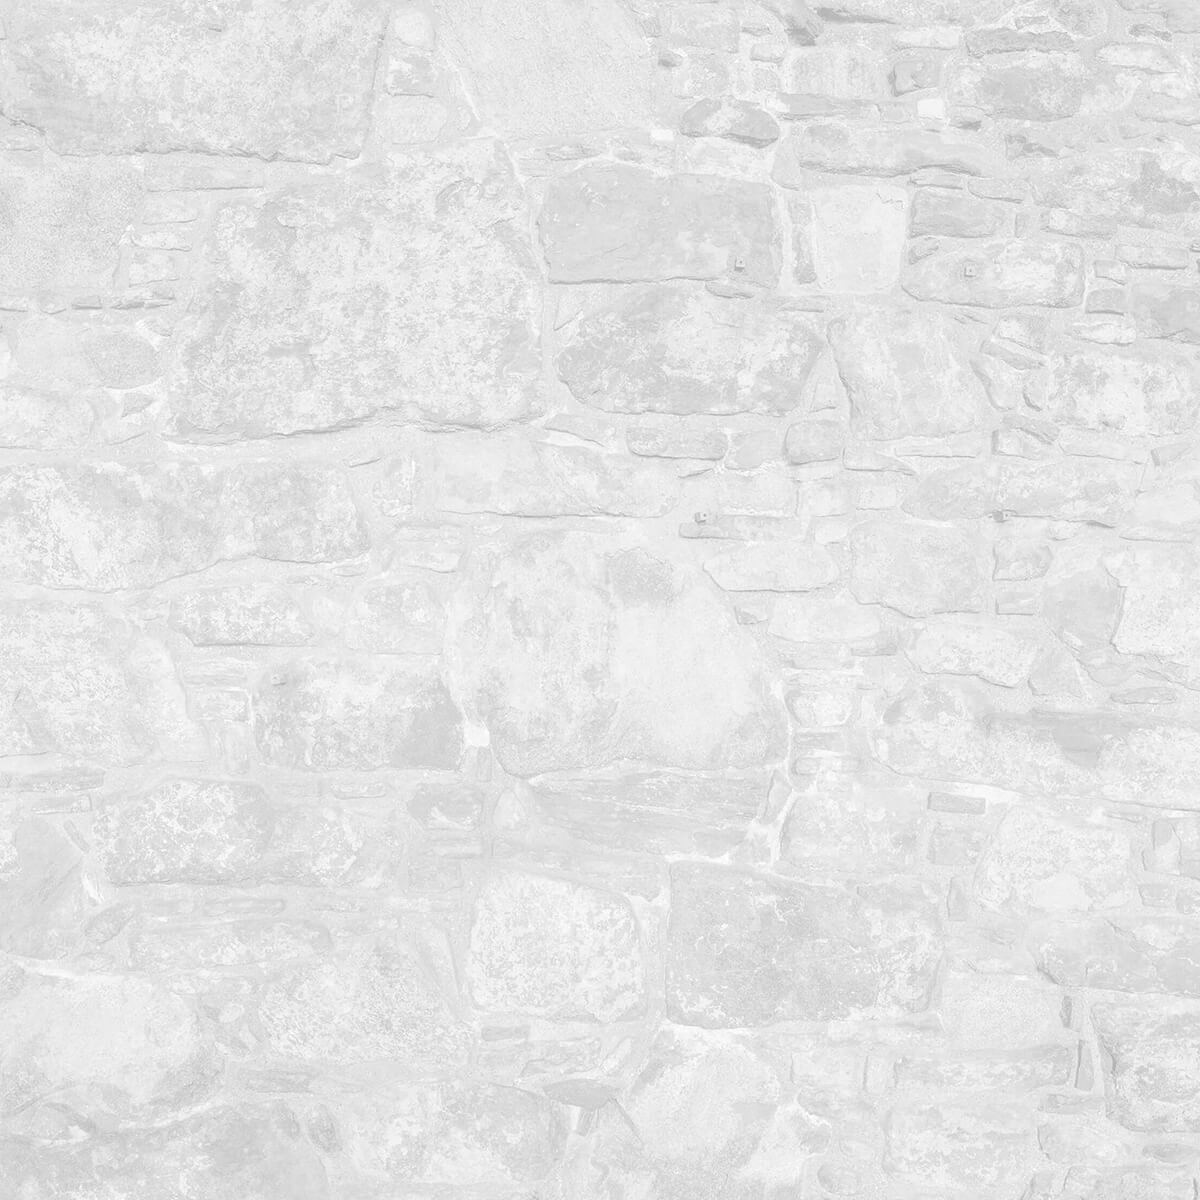 Oude muur met witte stenen